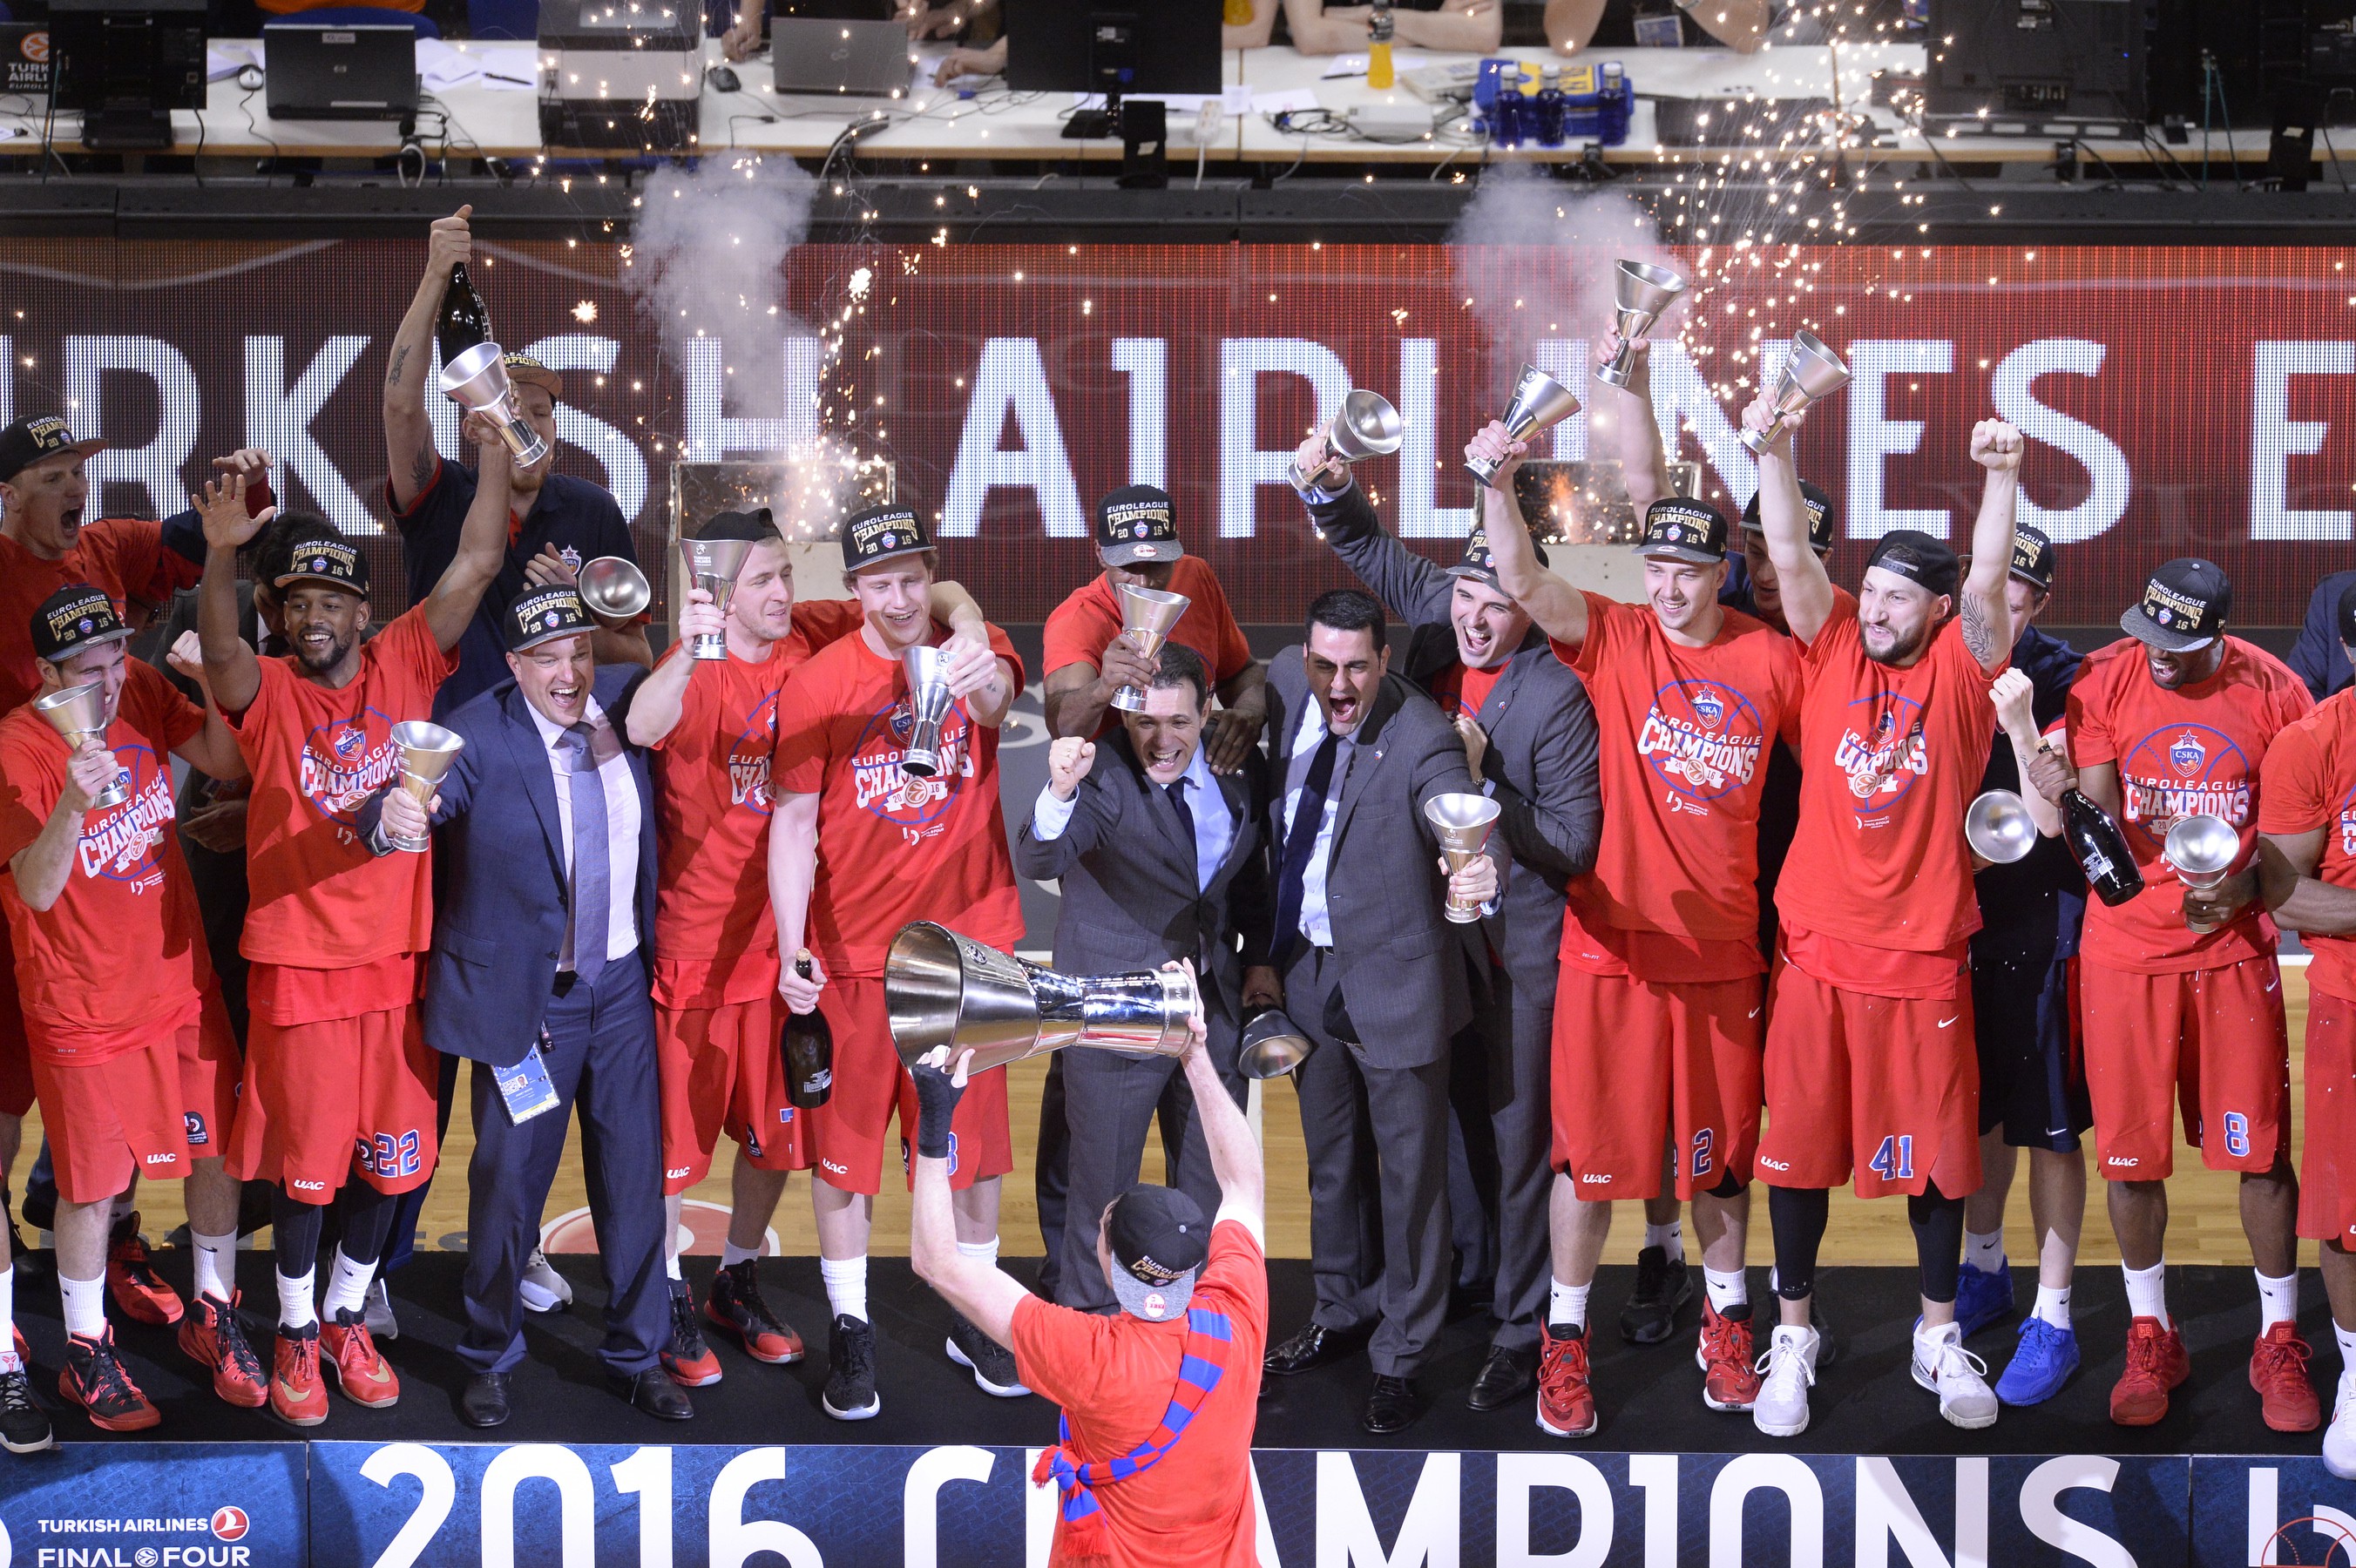 2015-16 EuroLeague Basketball Champions - CSKA Moscow